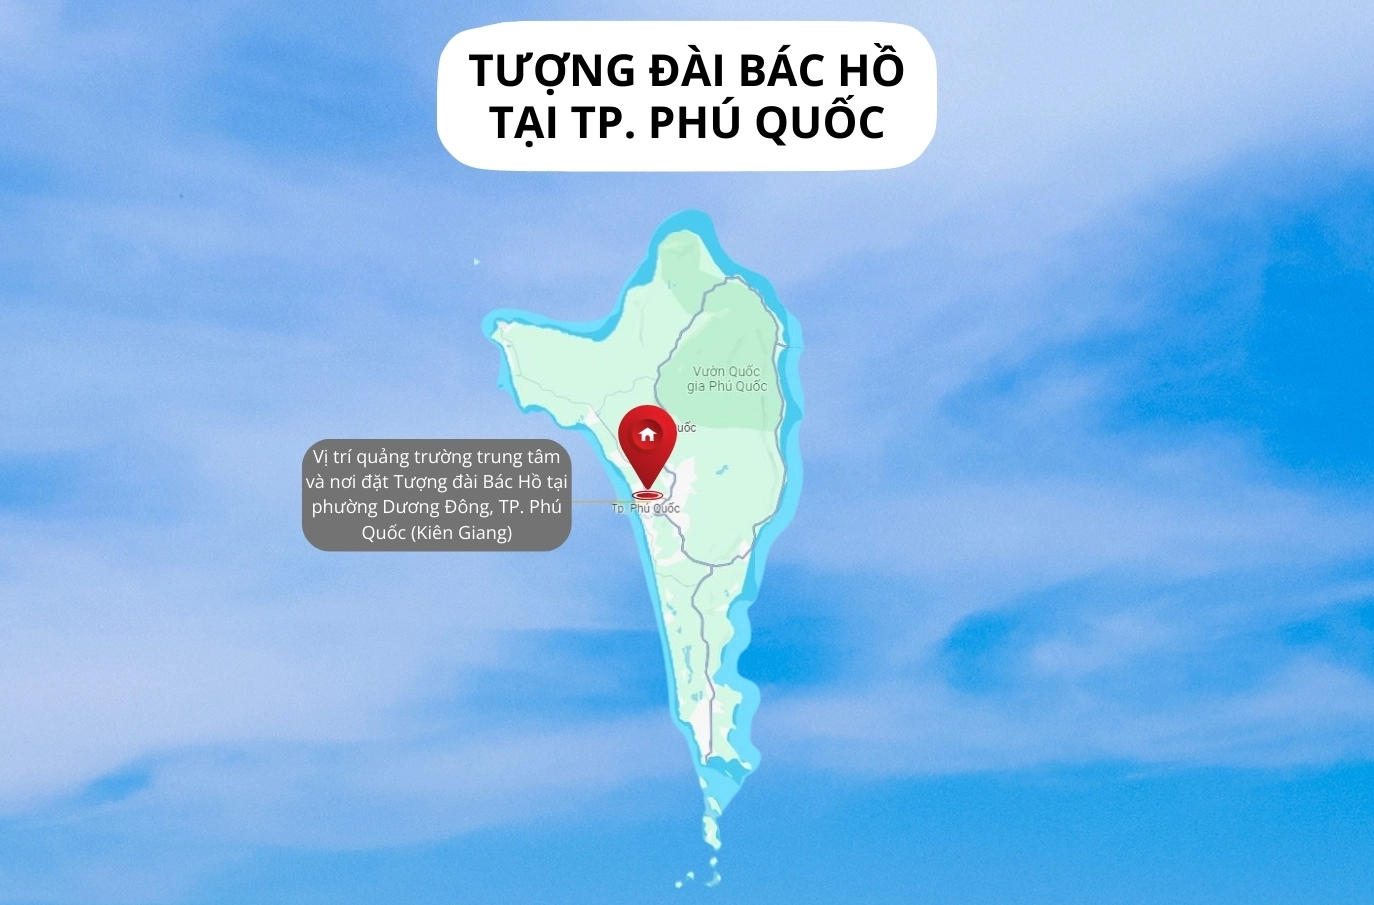 [Infographics] Quảng trường Hồ Chí Minh và tượng đài Bác Hồ tại TP. Phú Quốc